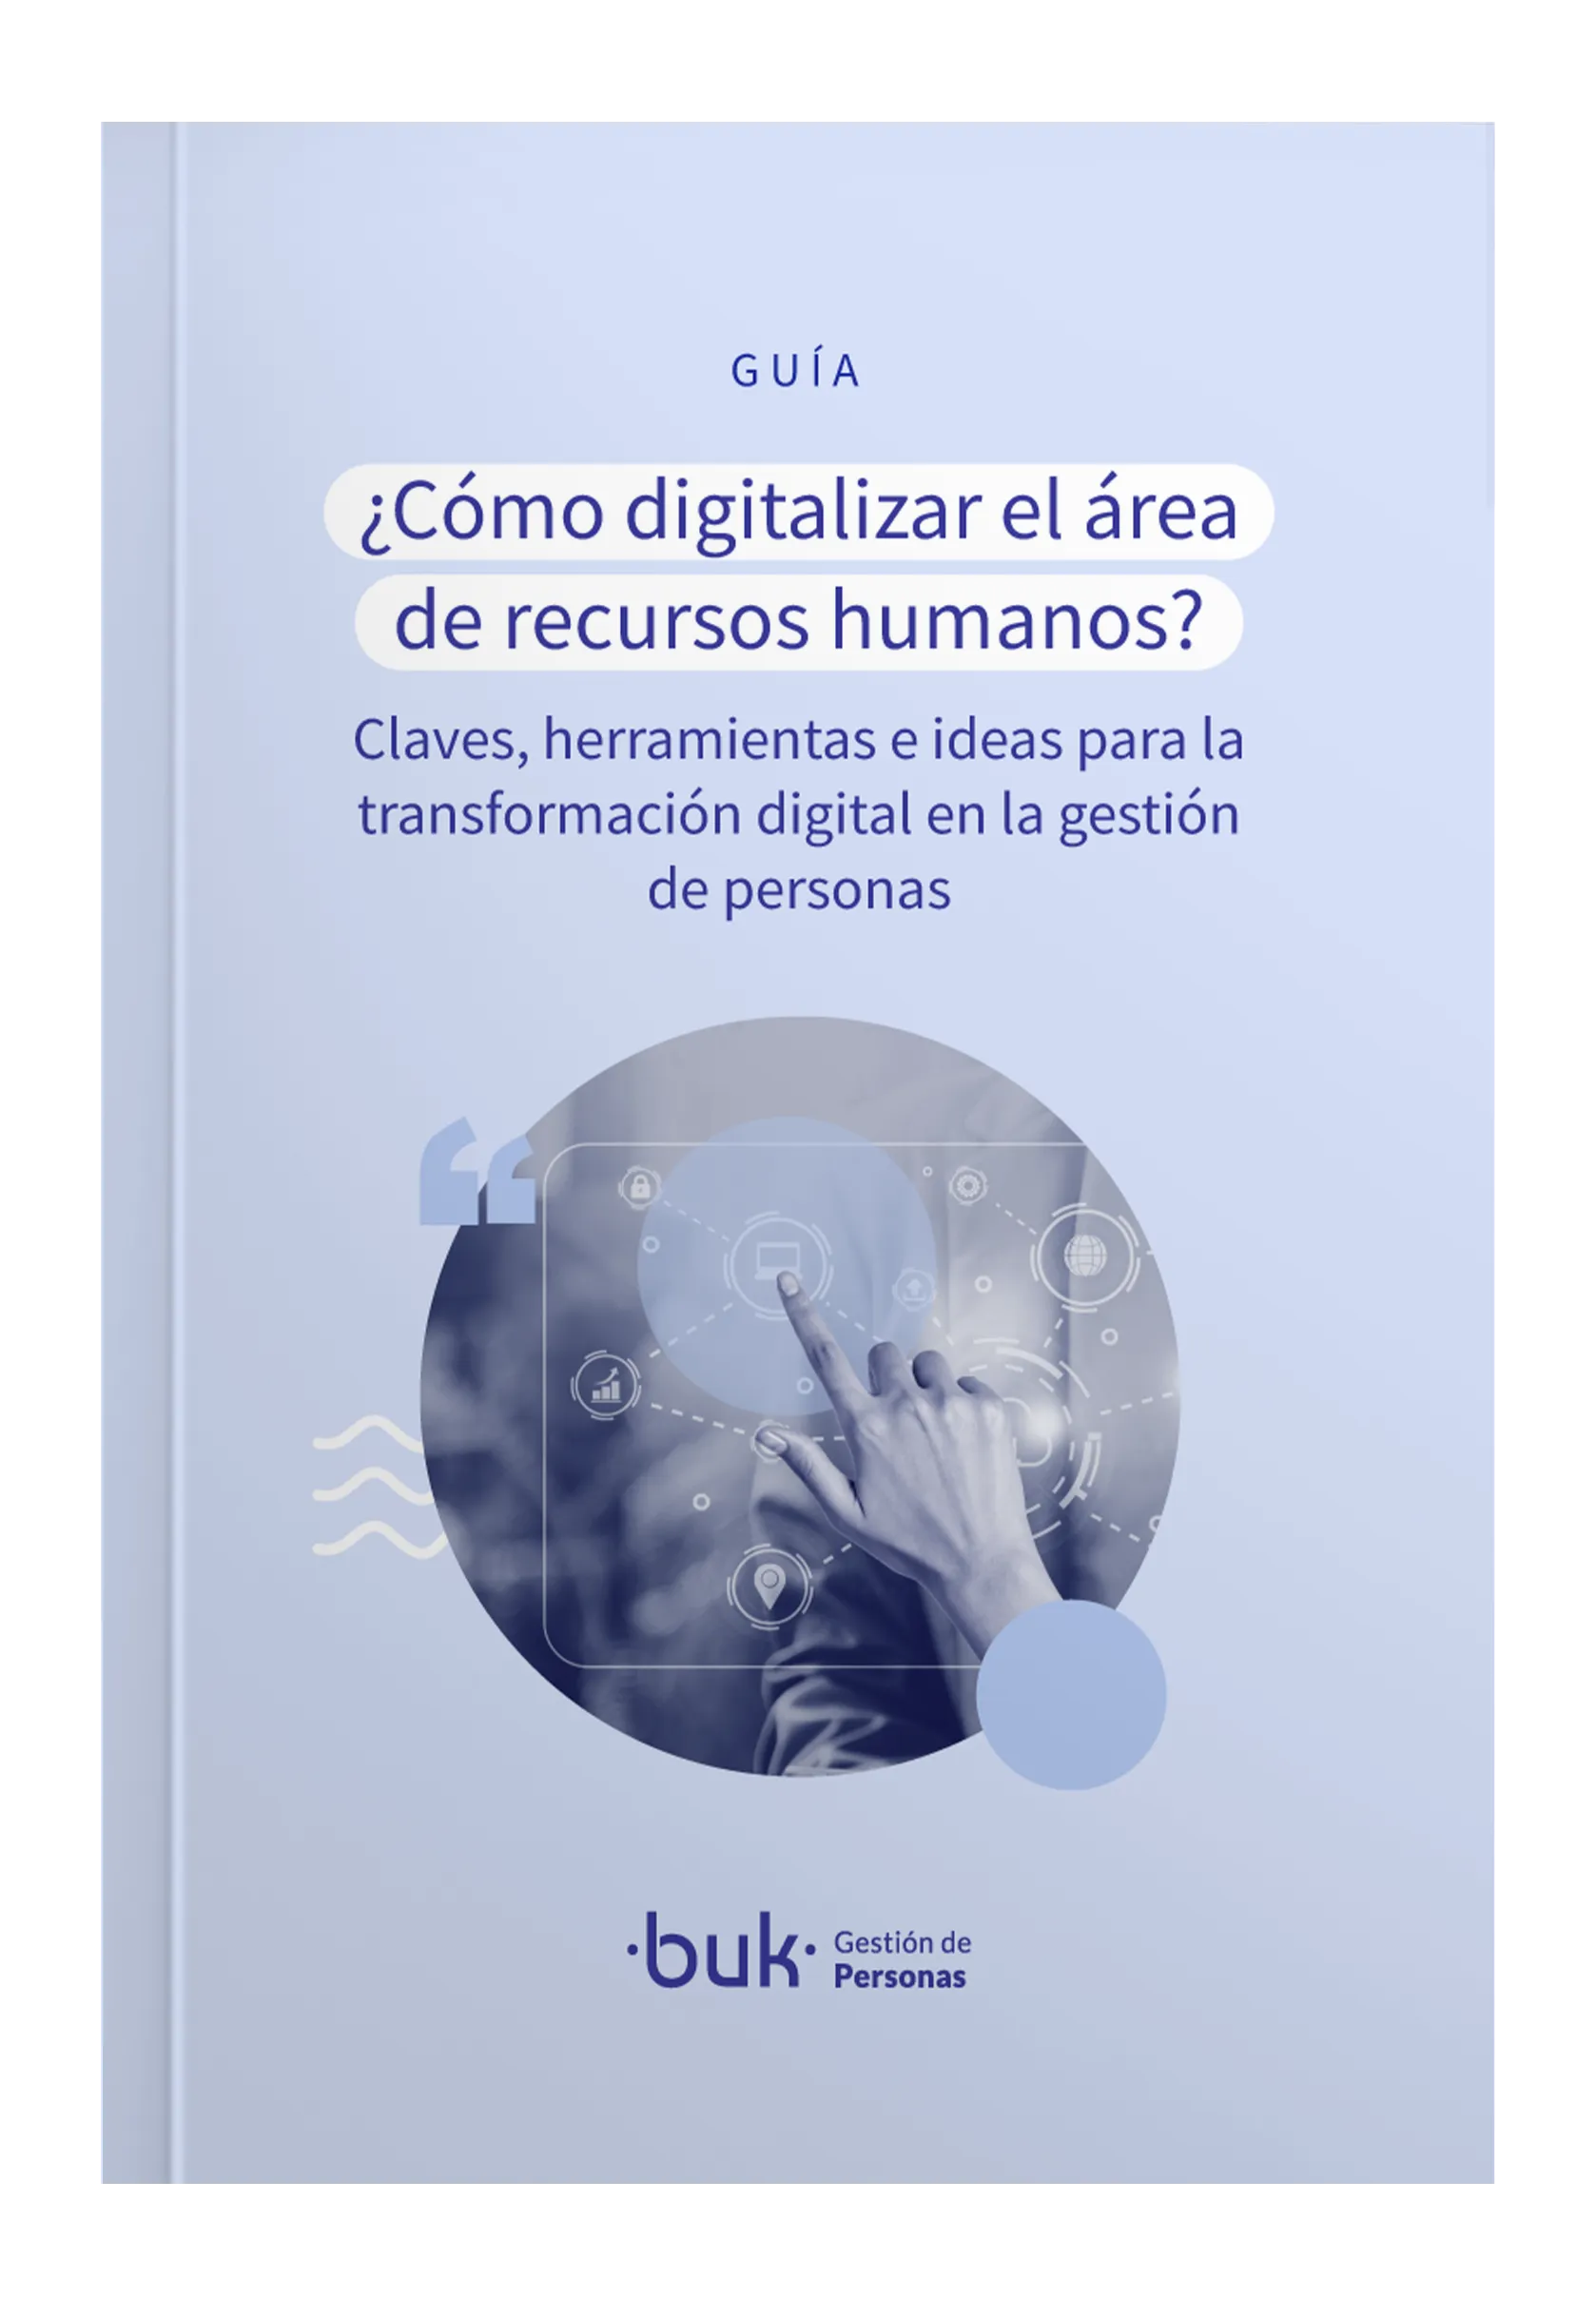 descarga la guia sobre la transformacion digital en los recursos humanos